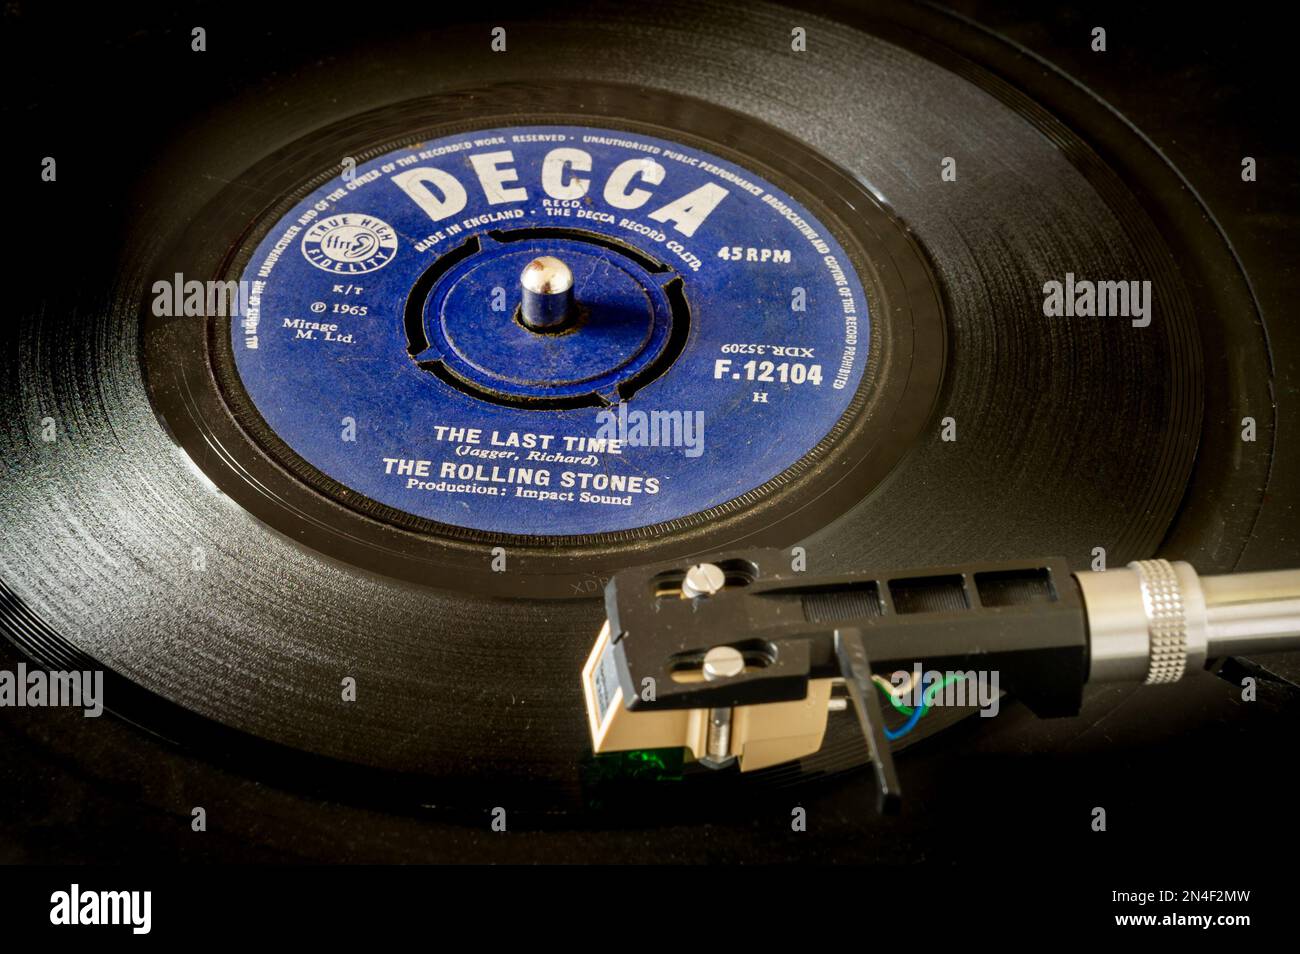 The Rolling Stones Sing The Last Time from Decca zeichnet eine 45rpm-Schallplatte auf, die auf einem Plattenspieler gespielt wird Stockfoto